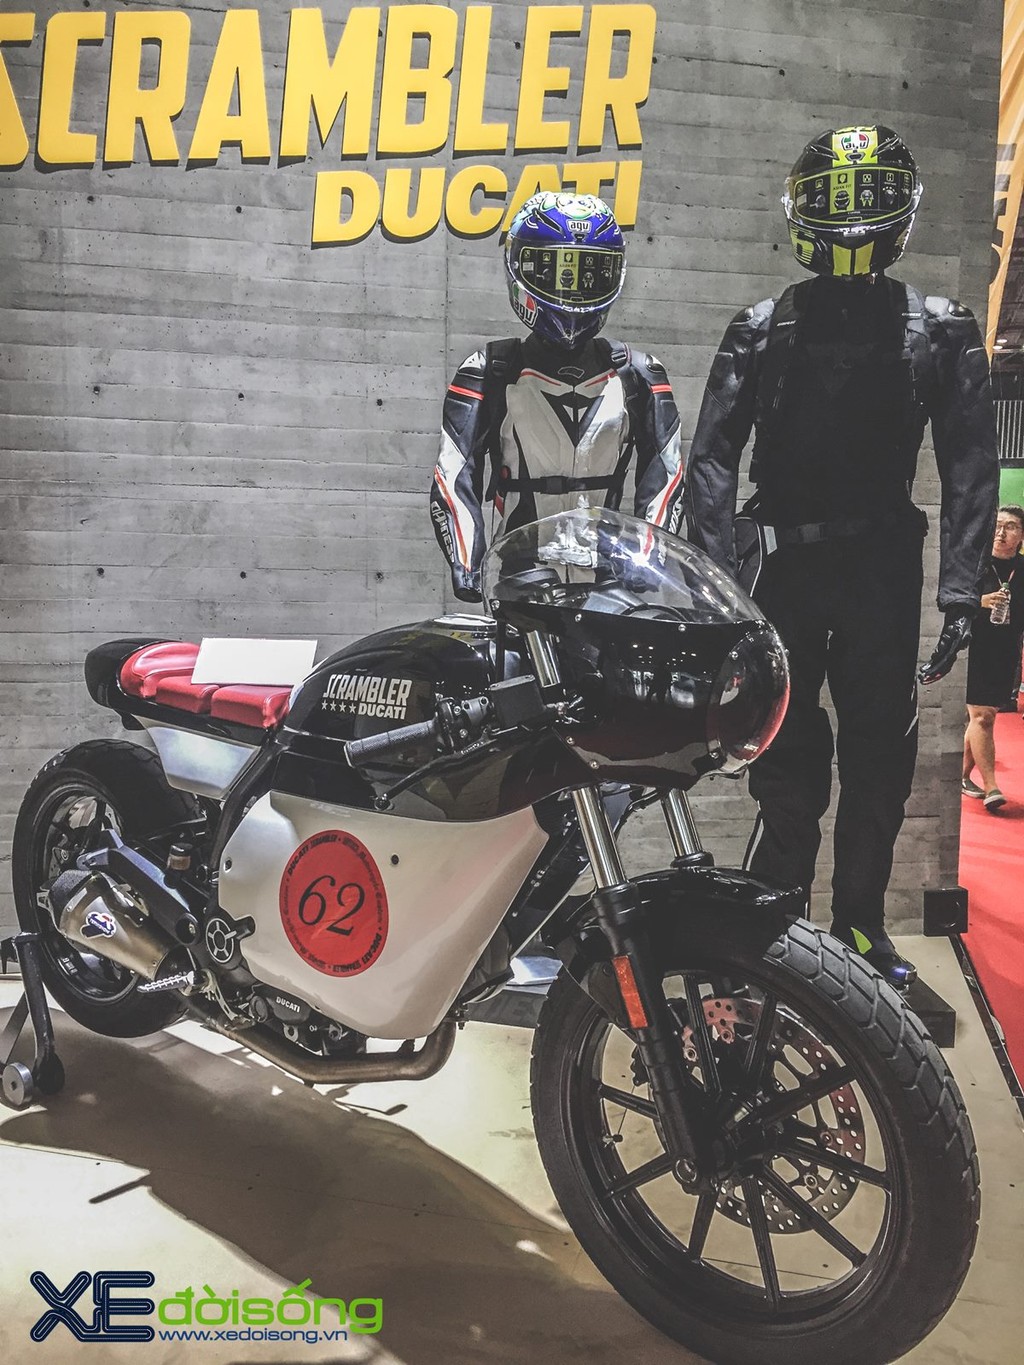 Ngắm cặp Ducati Scrambler độ cafe racer chính hãng tại Việt Nam ảnh 7